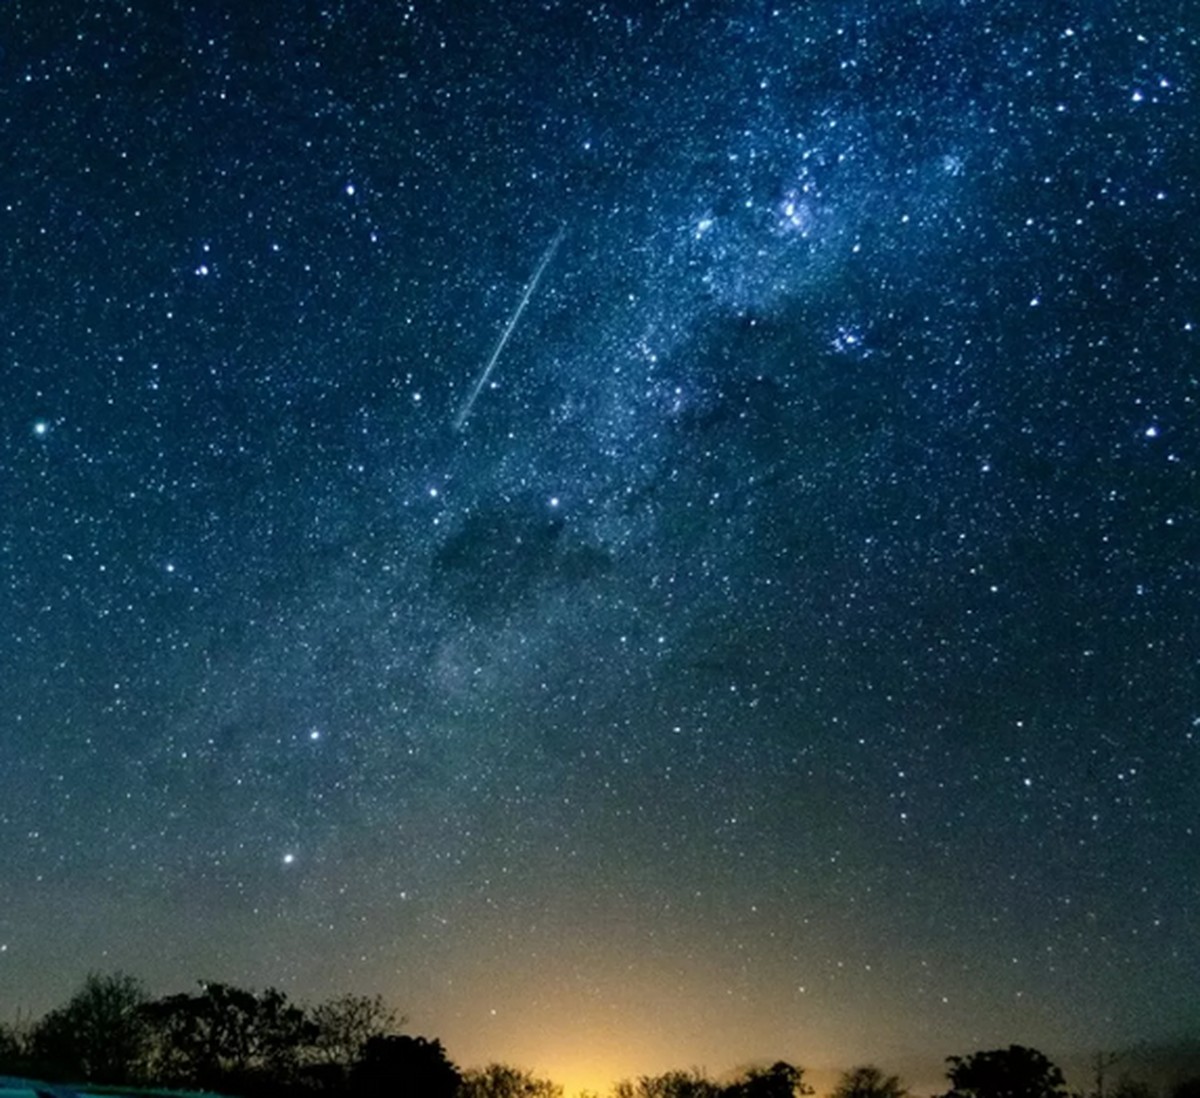 Chuva de meteoros poderá ser vista no céu do RN na madrugada de sexta (7);  saiba como observar | Rio Grande do Norte | G1